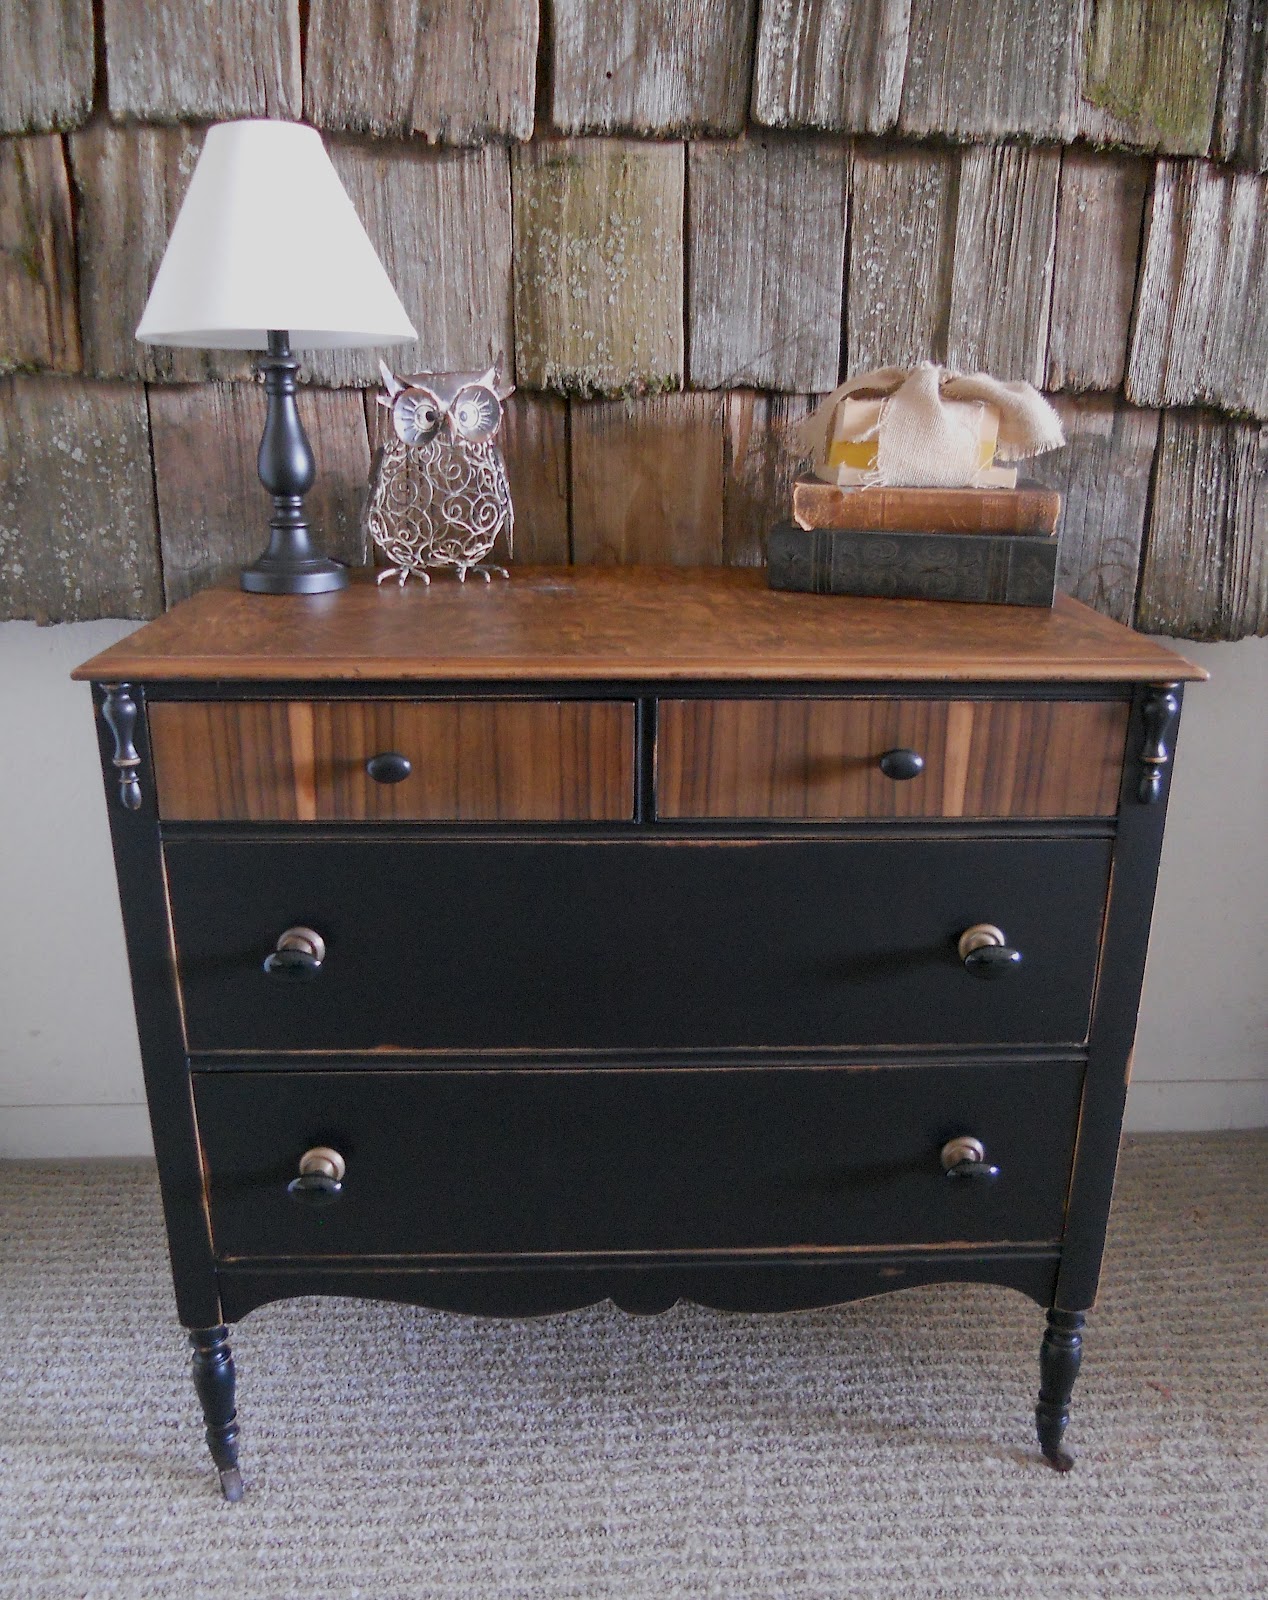 createinspire: Antique dresser black & wood